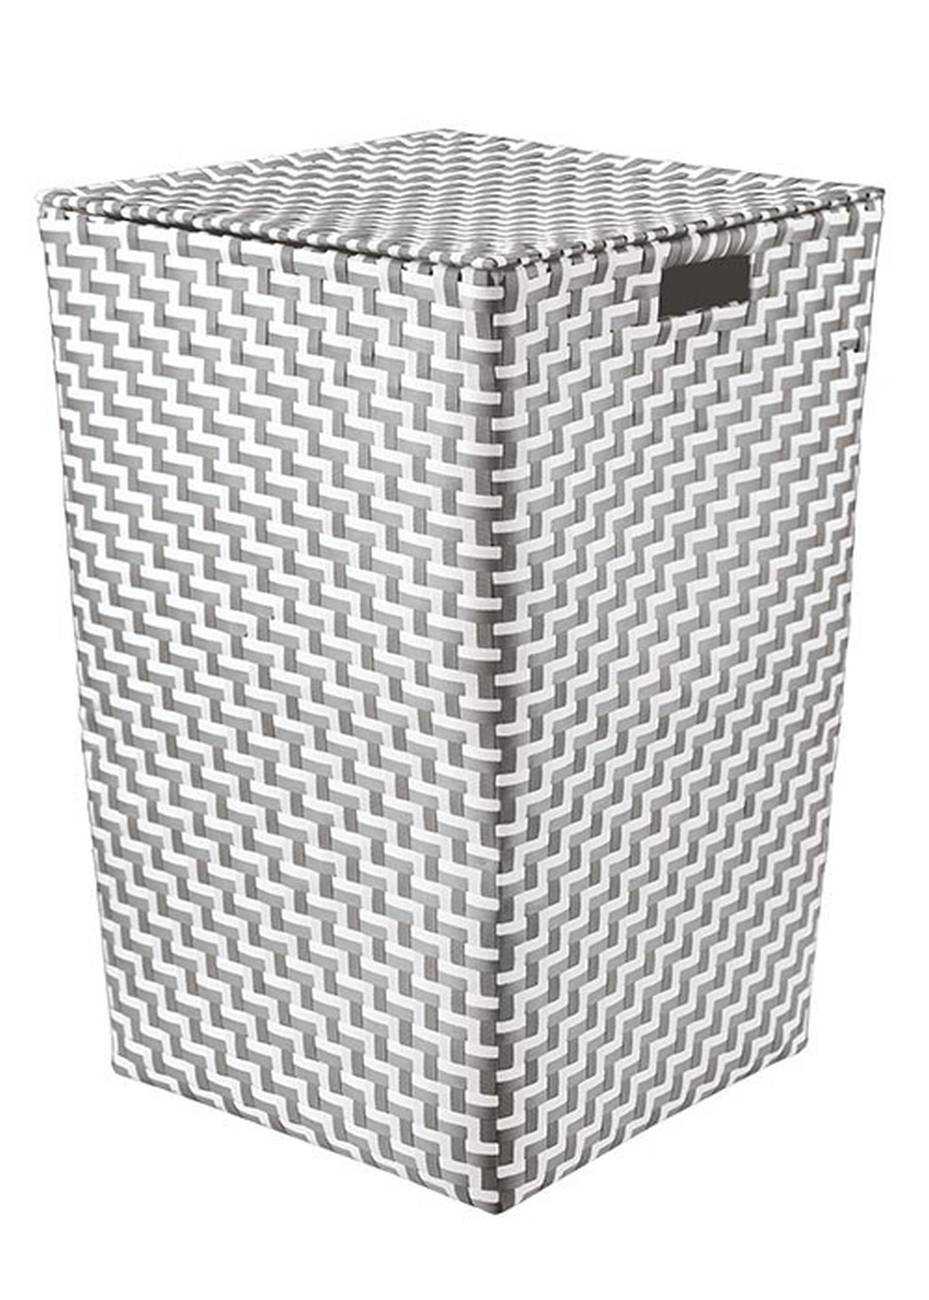 Wäschebox Double Laundry Box 100 % Polypropylen Platin Wäschebox 35x55 cm